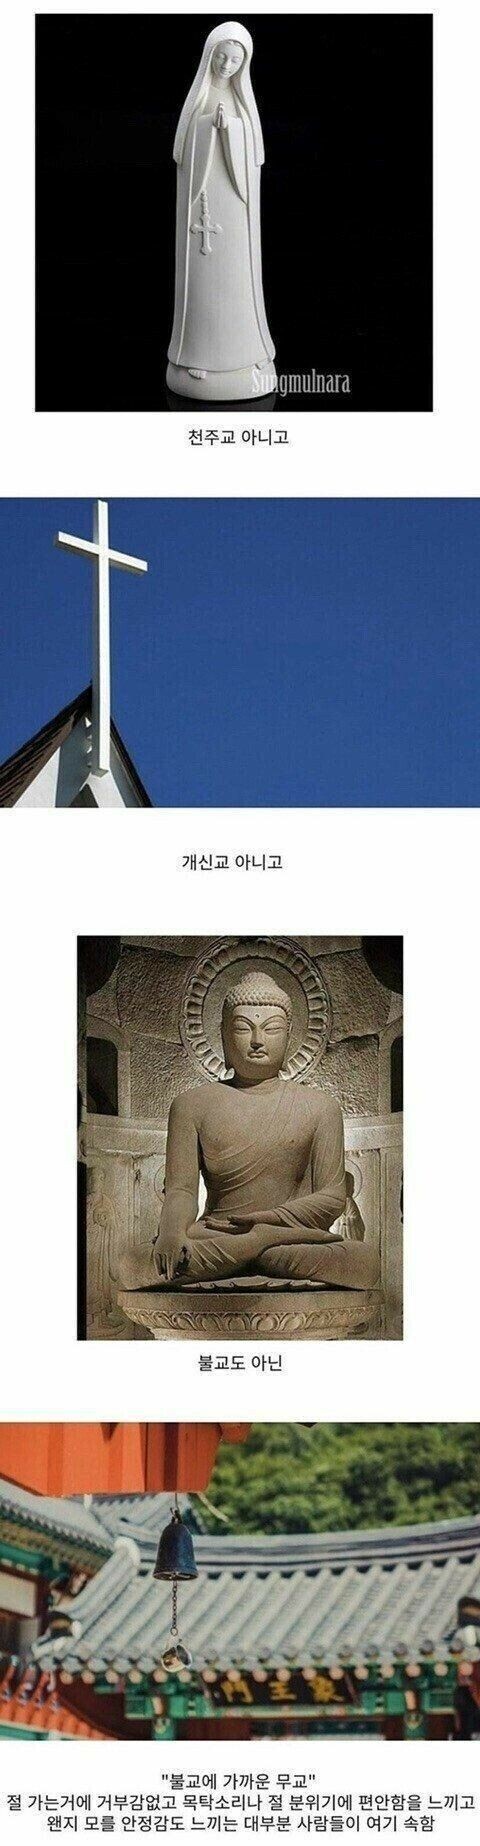 한국에 많이 있는 종교 유형